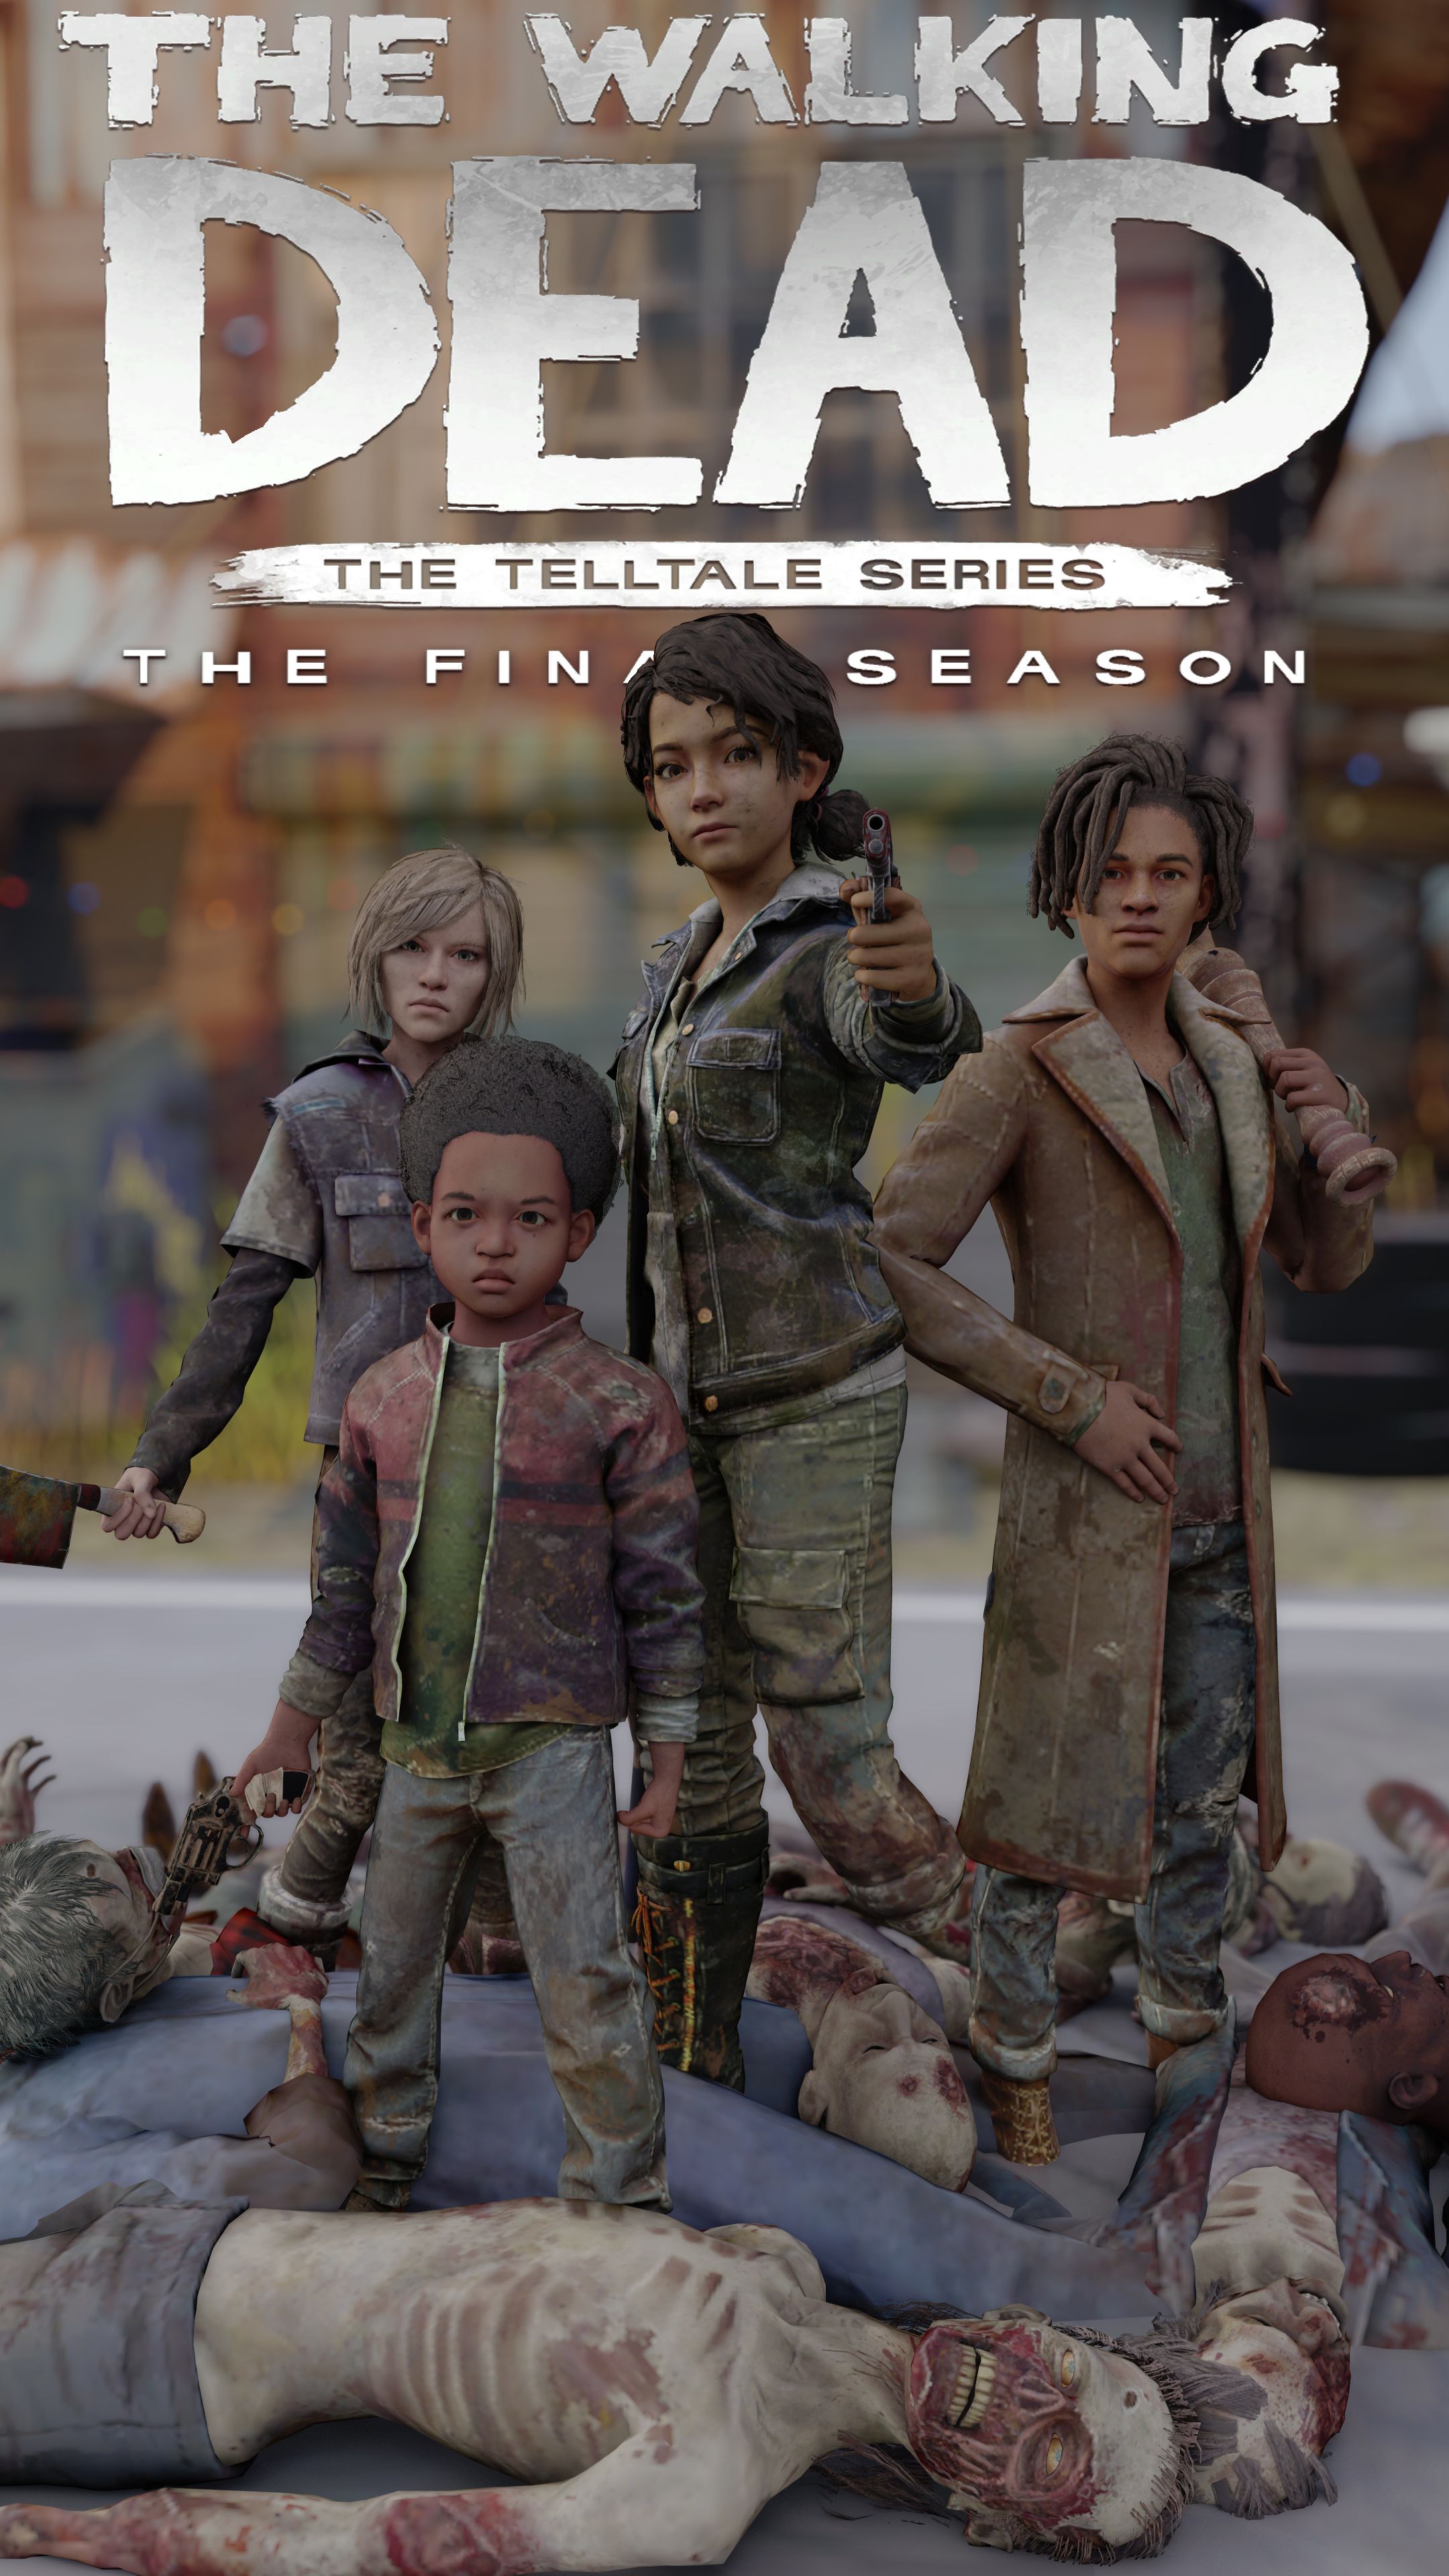 The Walking Dead The Final Season Wallpaper Phone. The walking dead telltale, Walking dead game, The walking dead